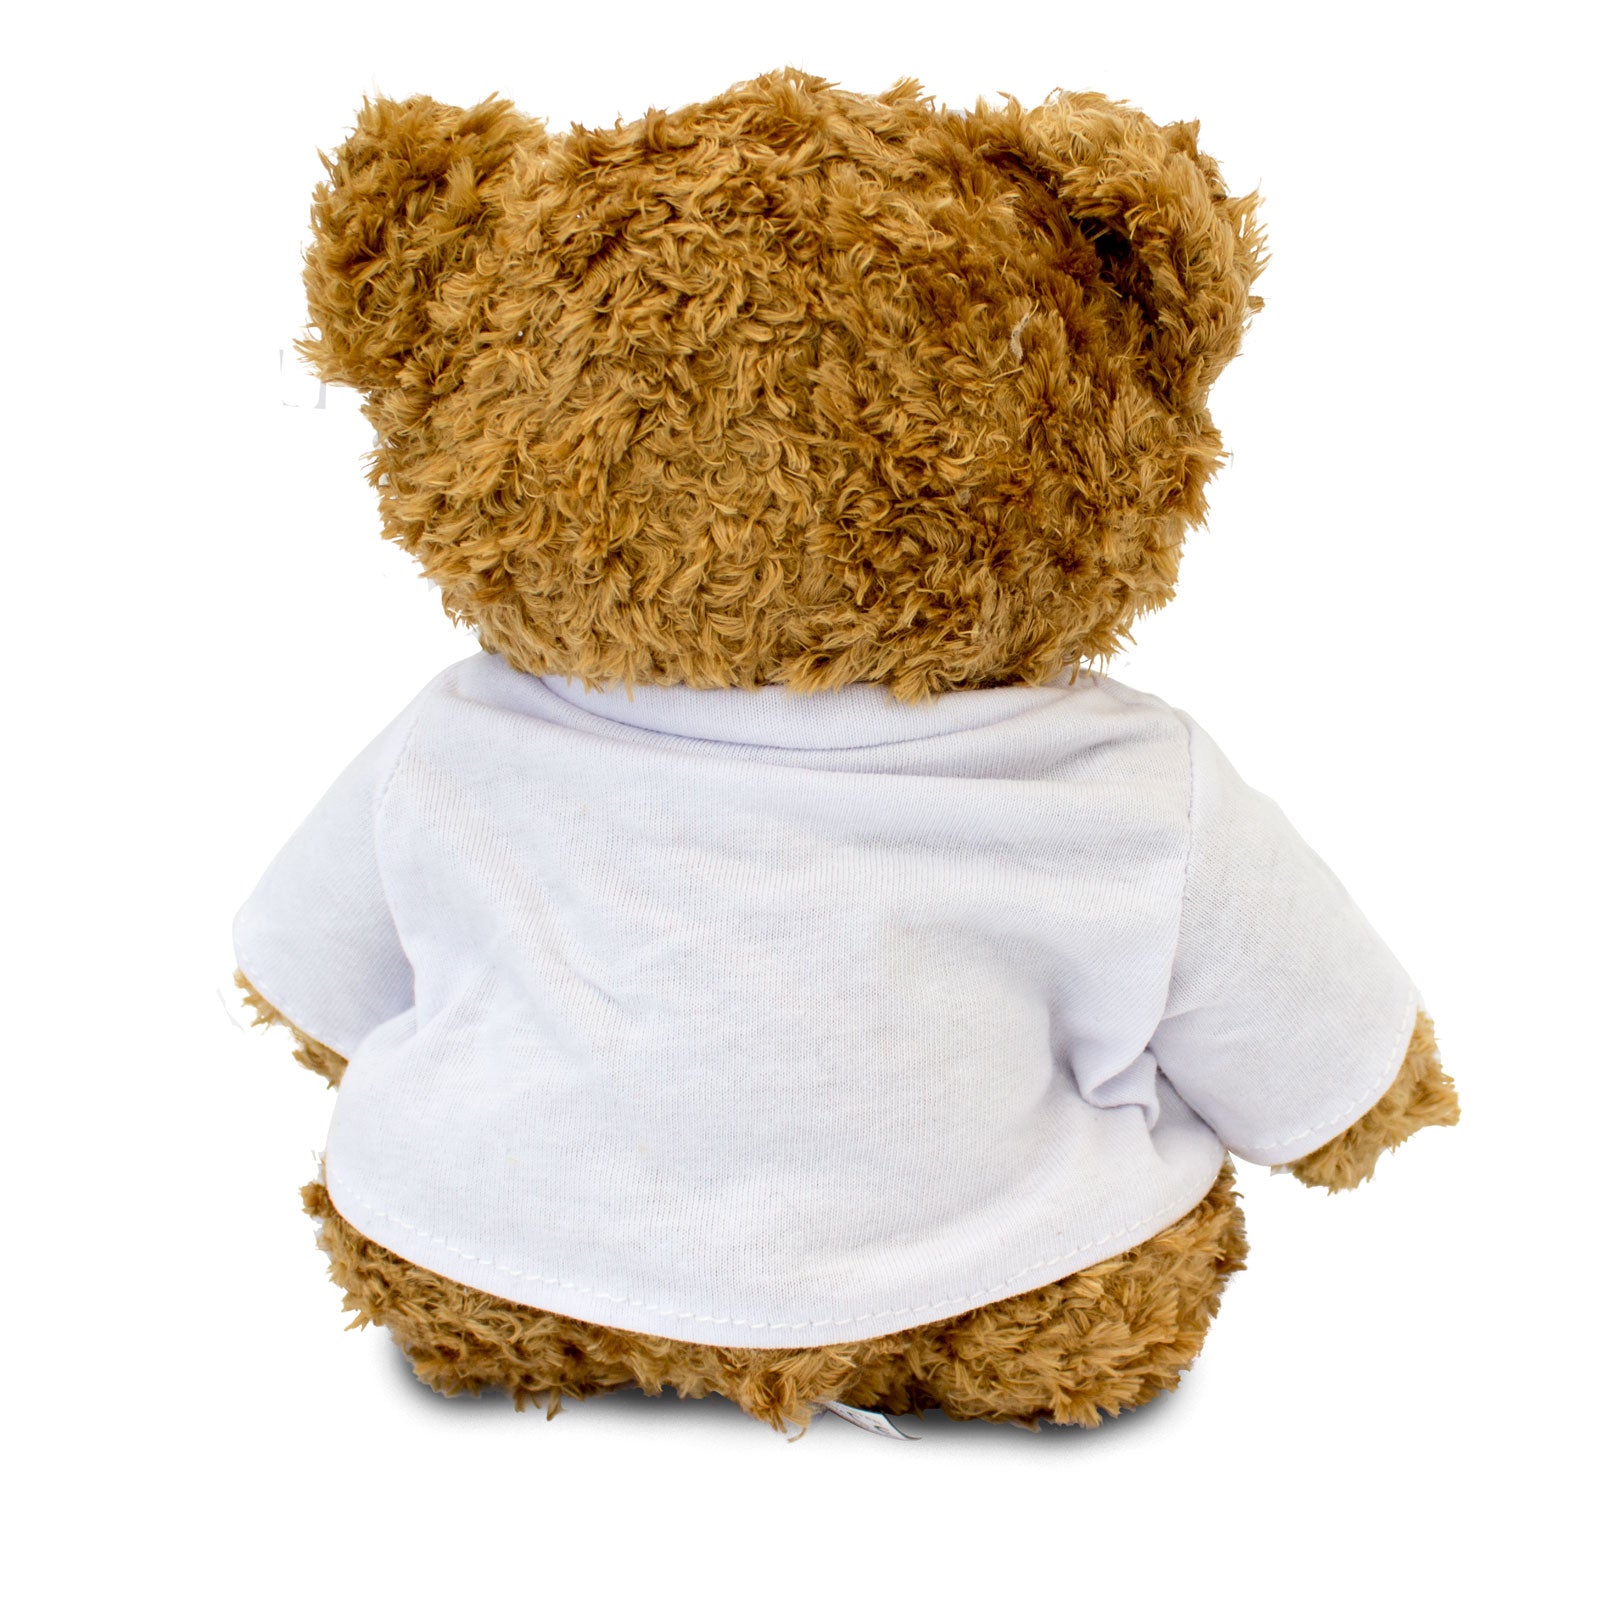 Get Well Soon Garth - Teddy Bear